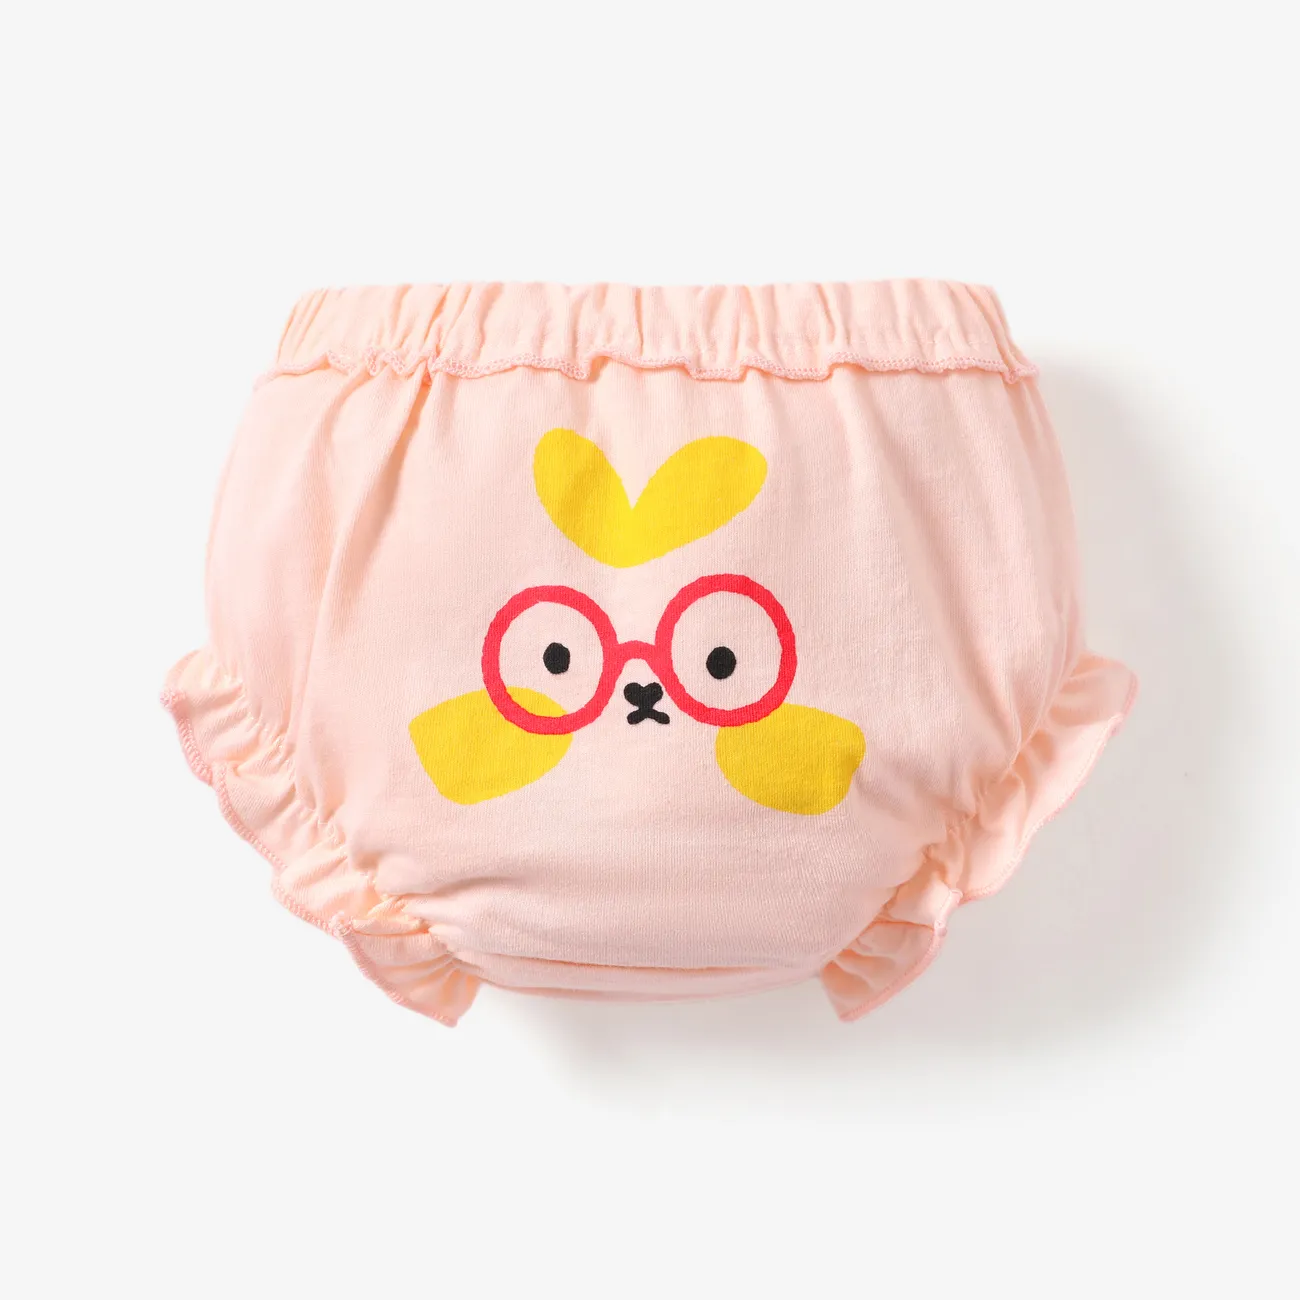 Childlike Expression Unisex Cotton Underwear Set Pink big image 1